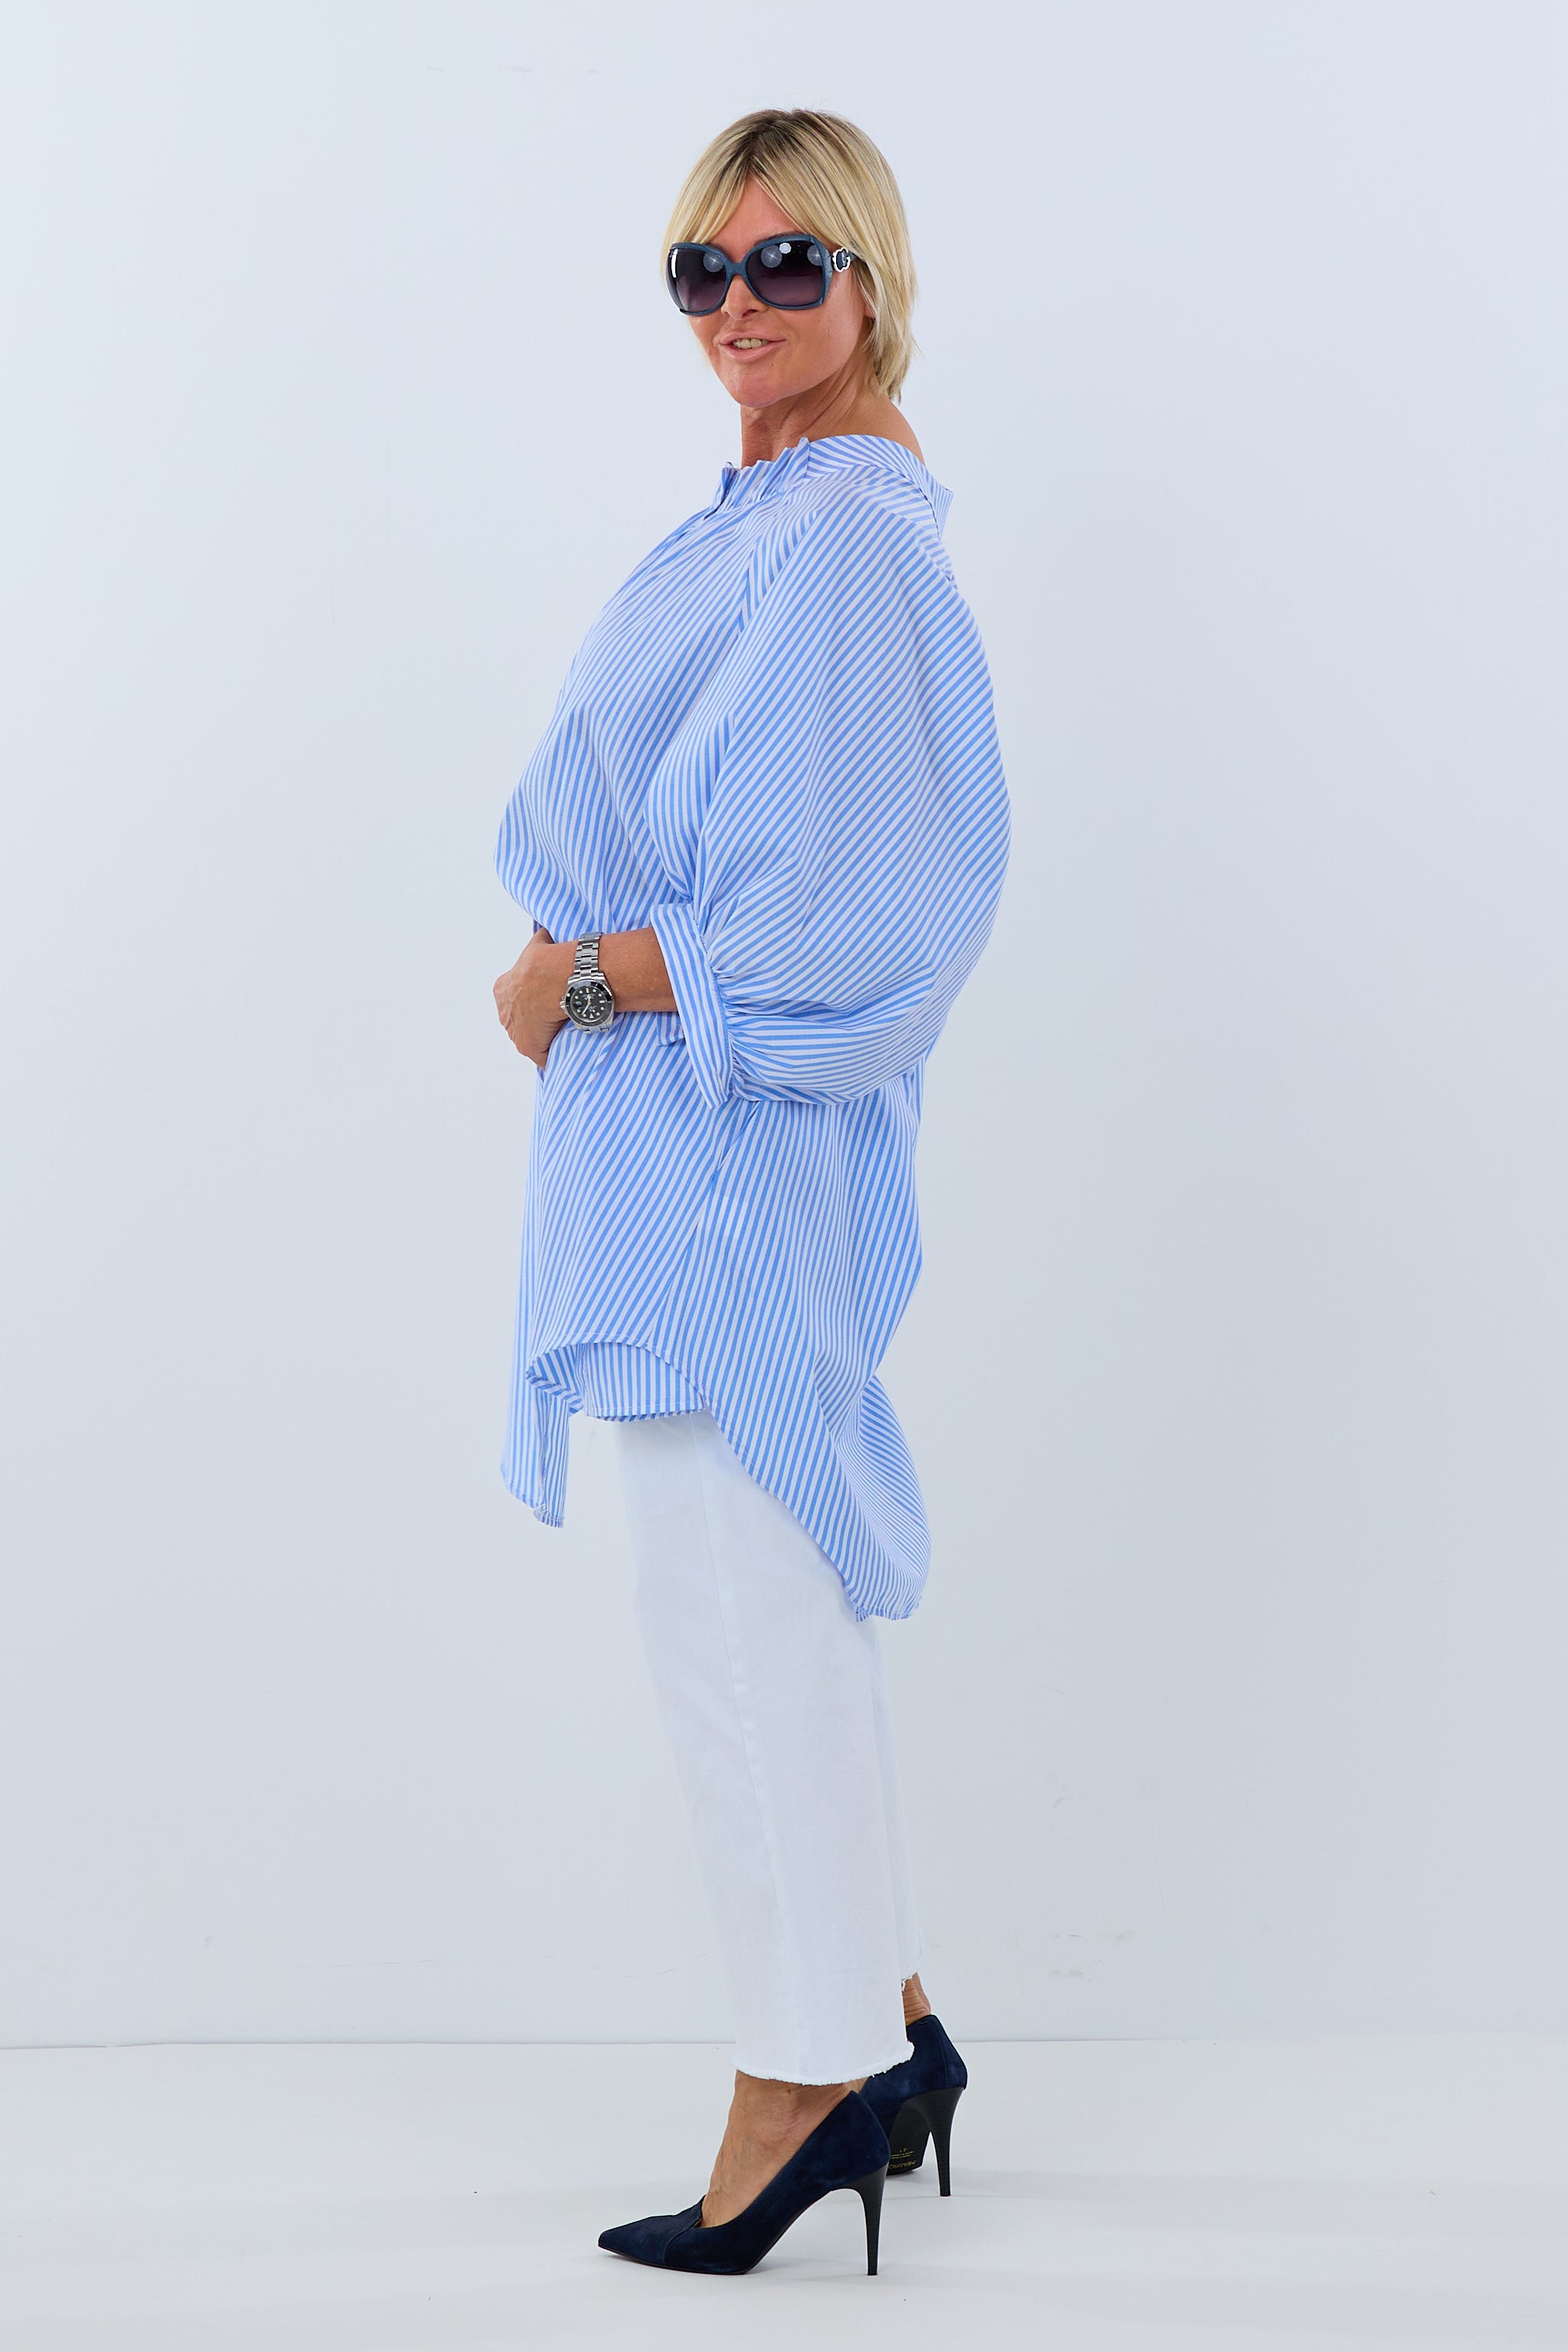 Damen Bluse Streifen blau weiß TLD GmbH